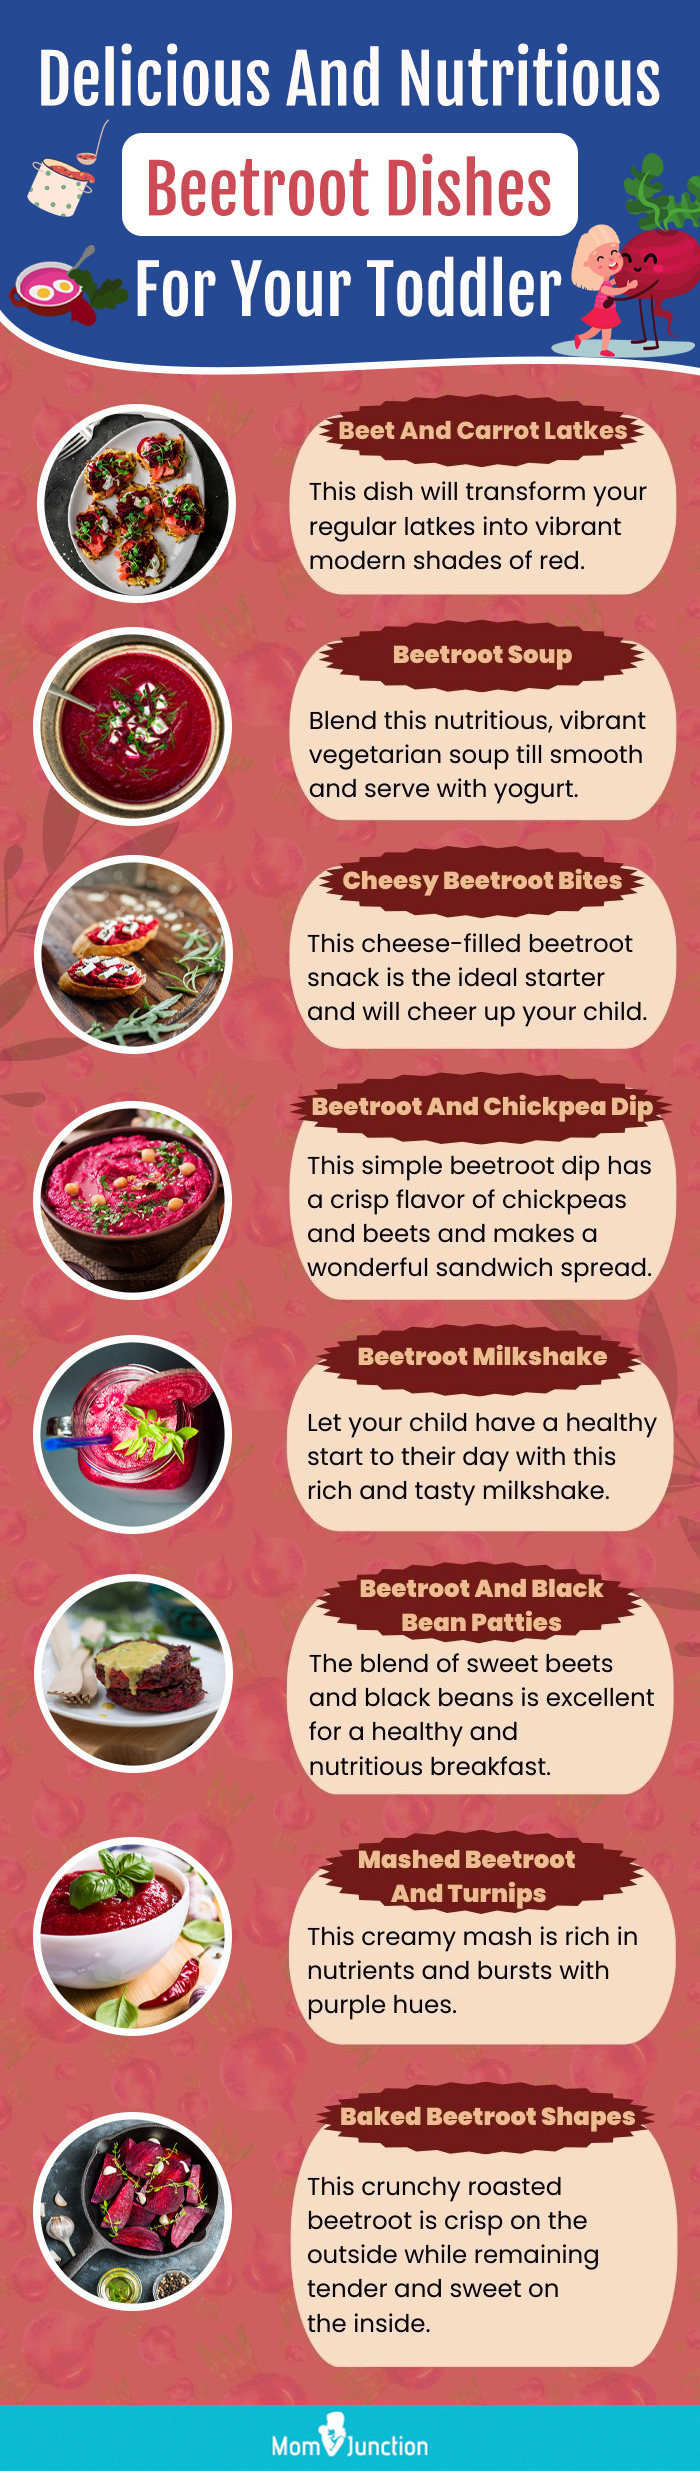 美味和营养的甜菜根菜为您的孩子(信息图)万博体育手机官方网站登录